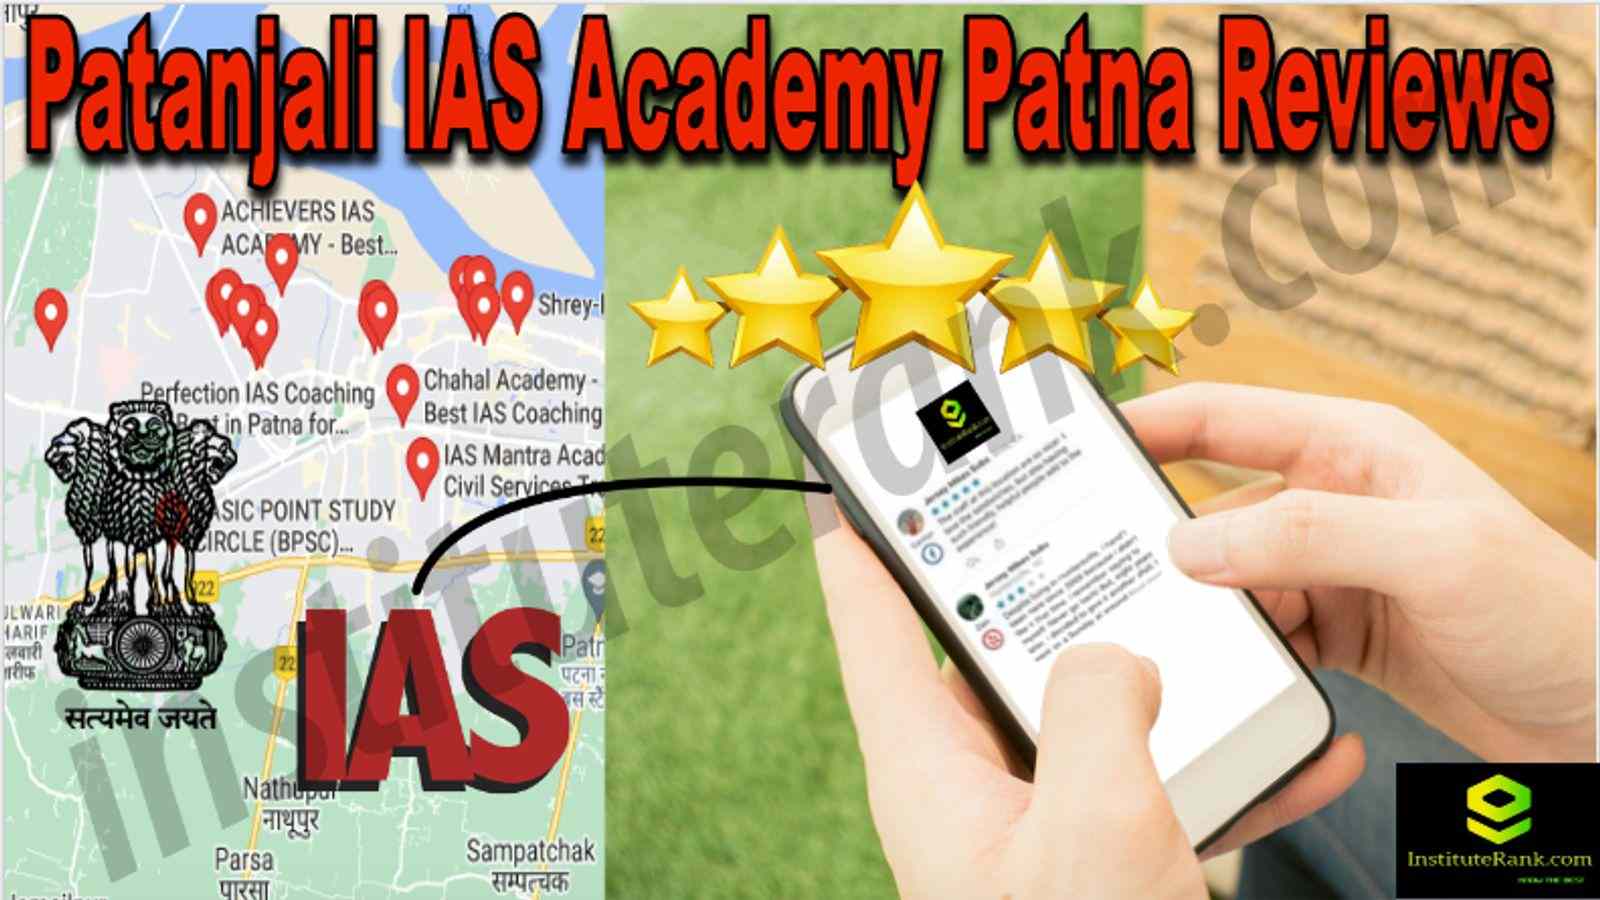 Patanjali IAS Academy Patna Reviews